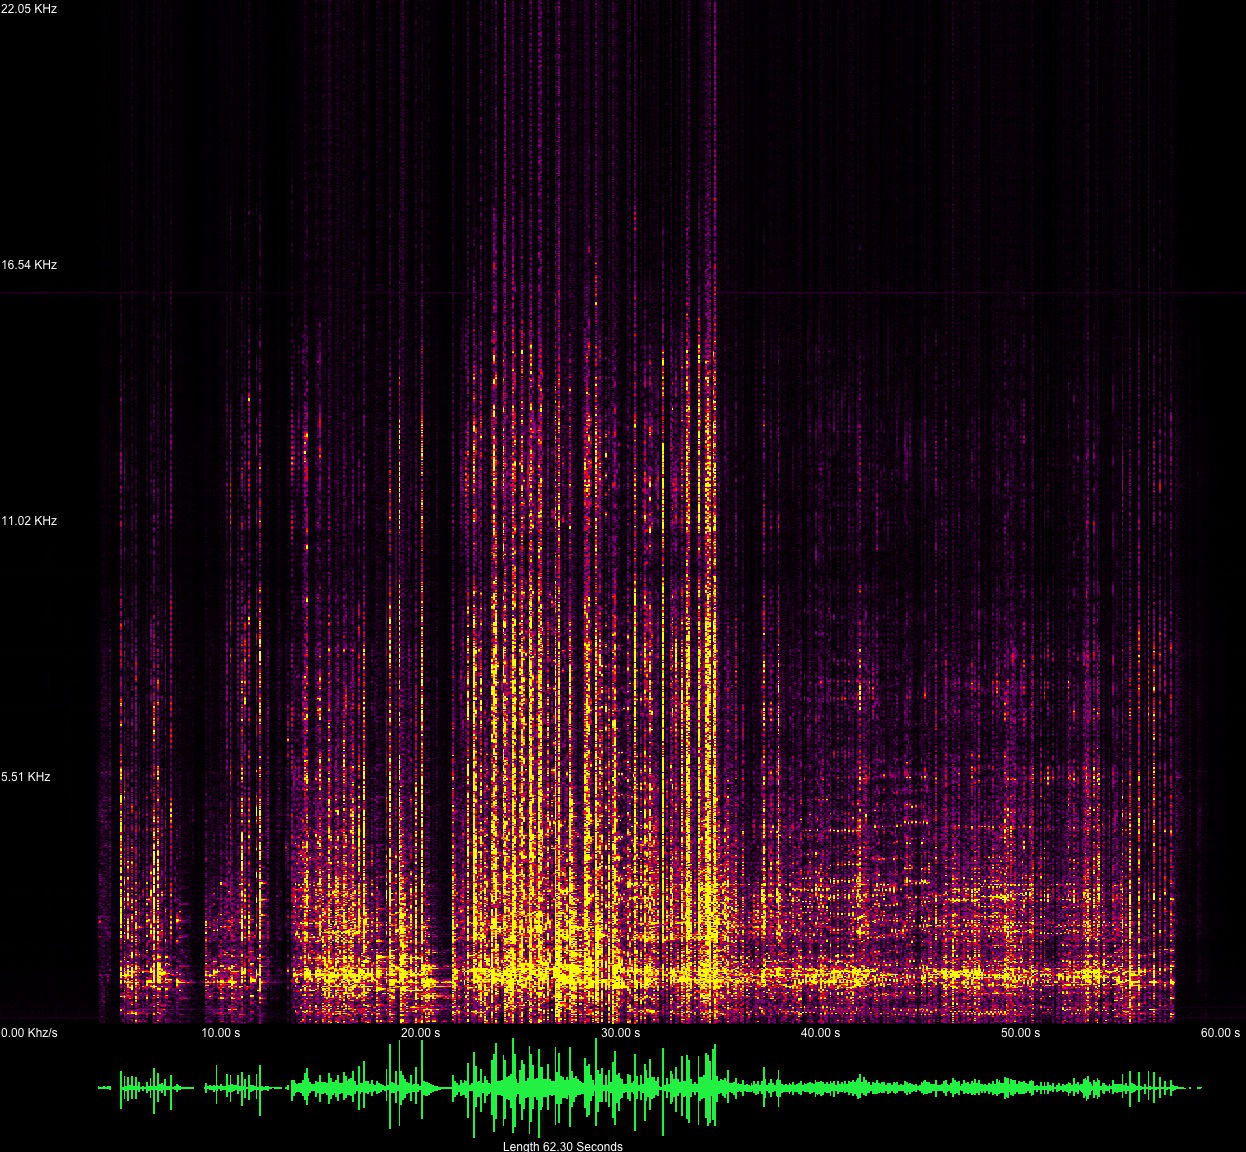 Audio Spectrum Analyzer Mac